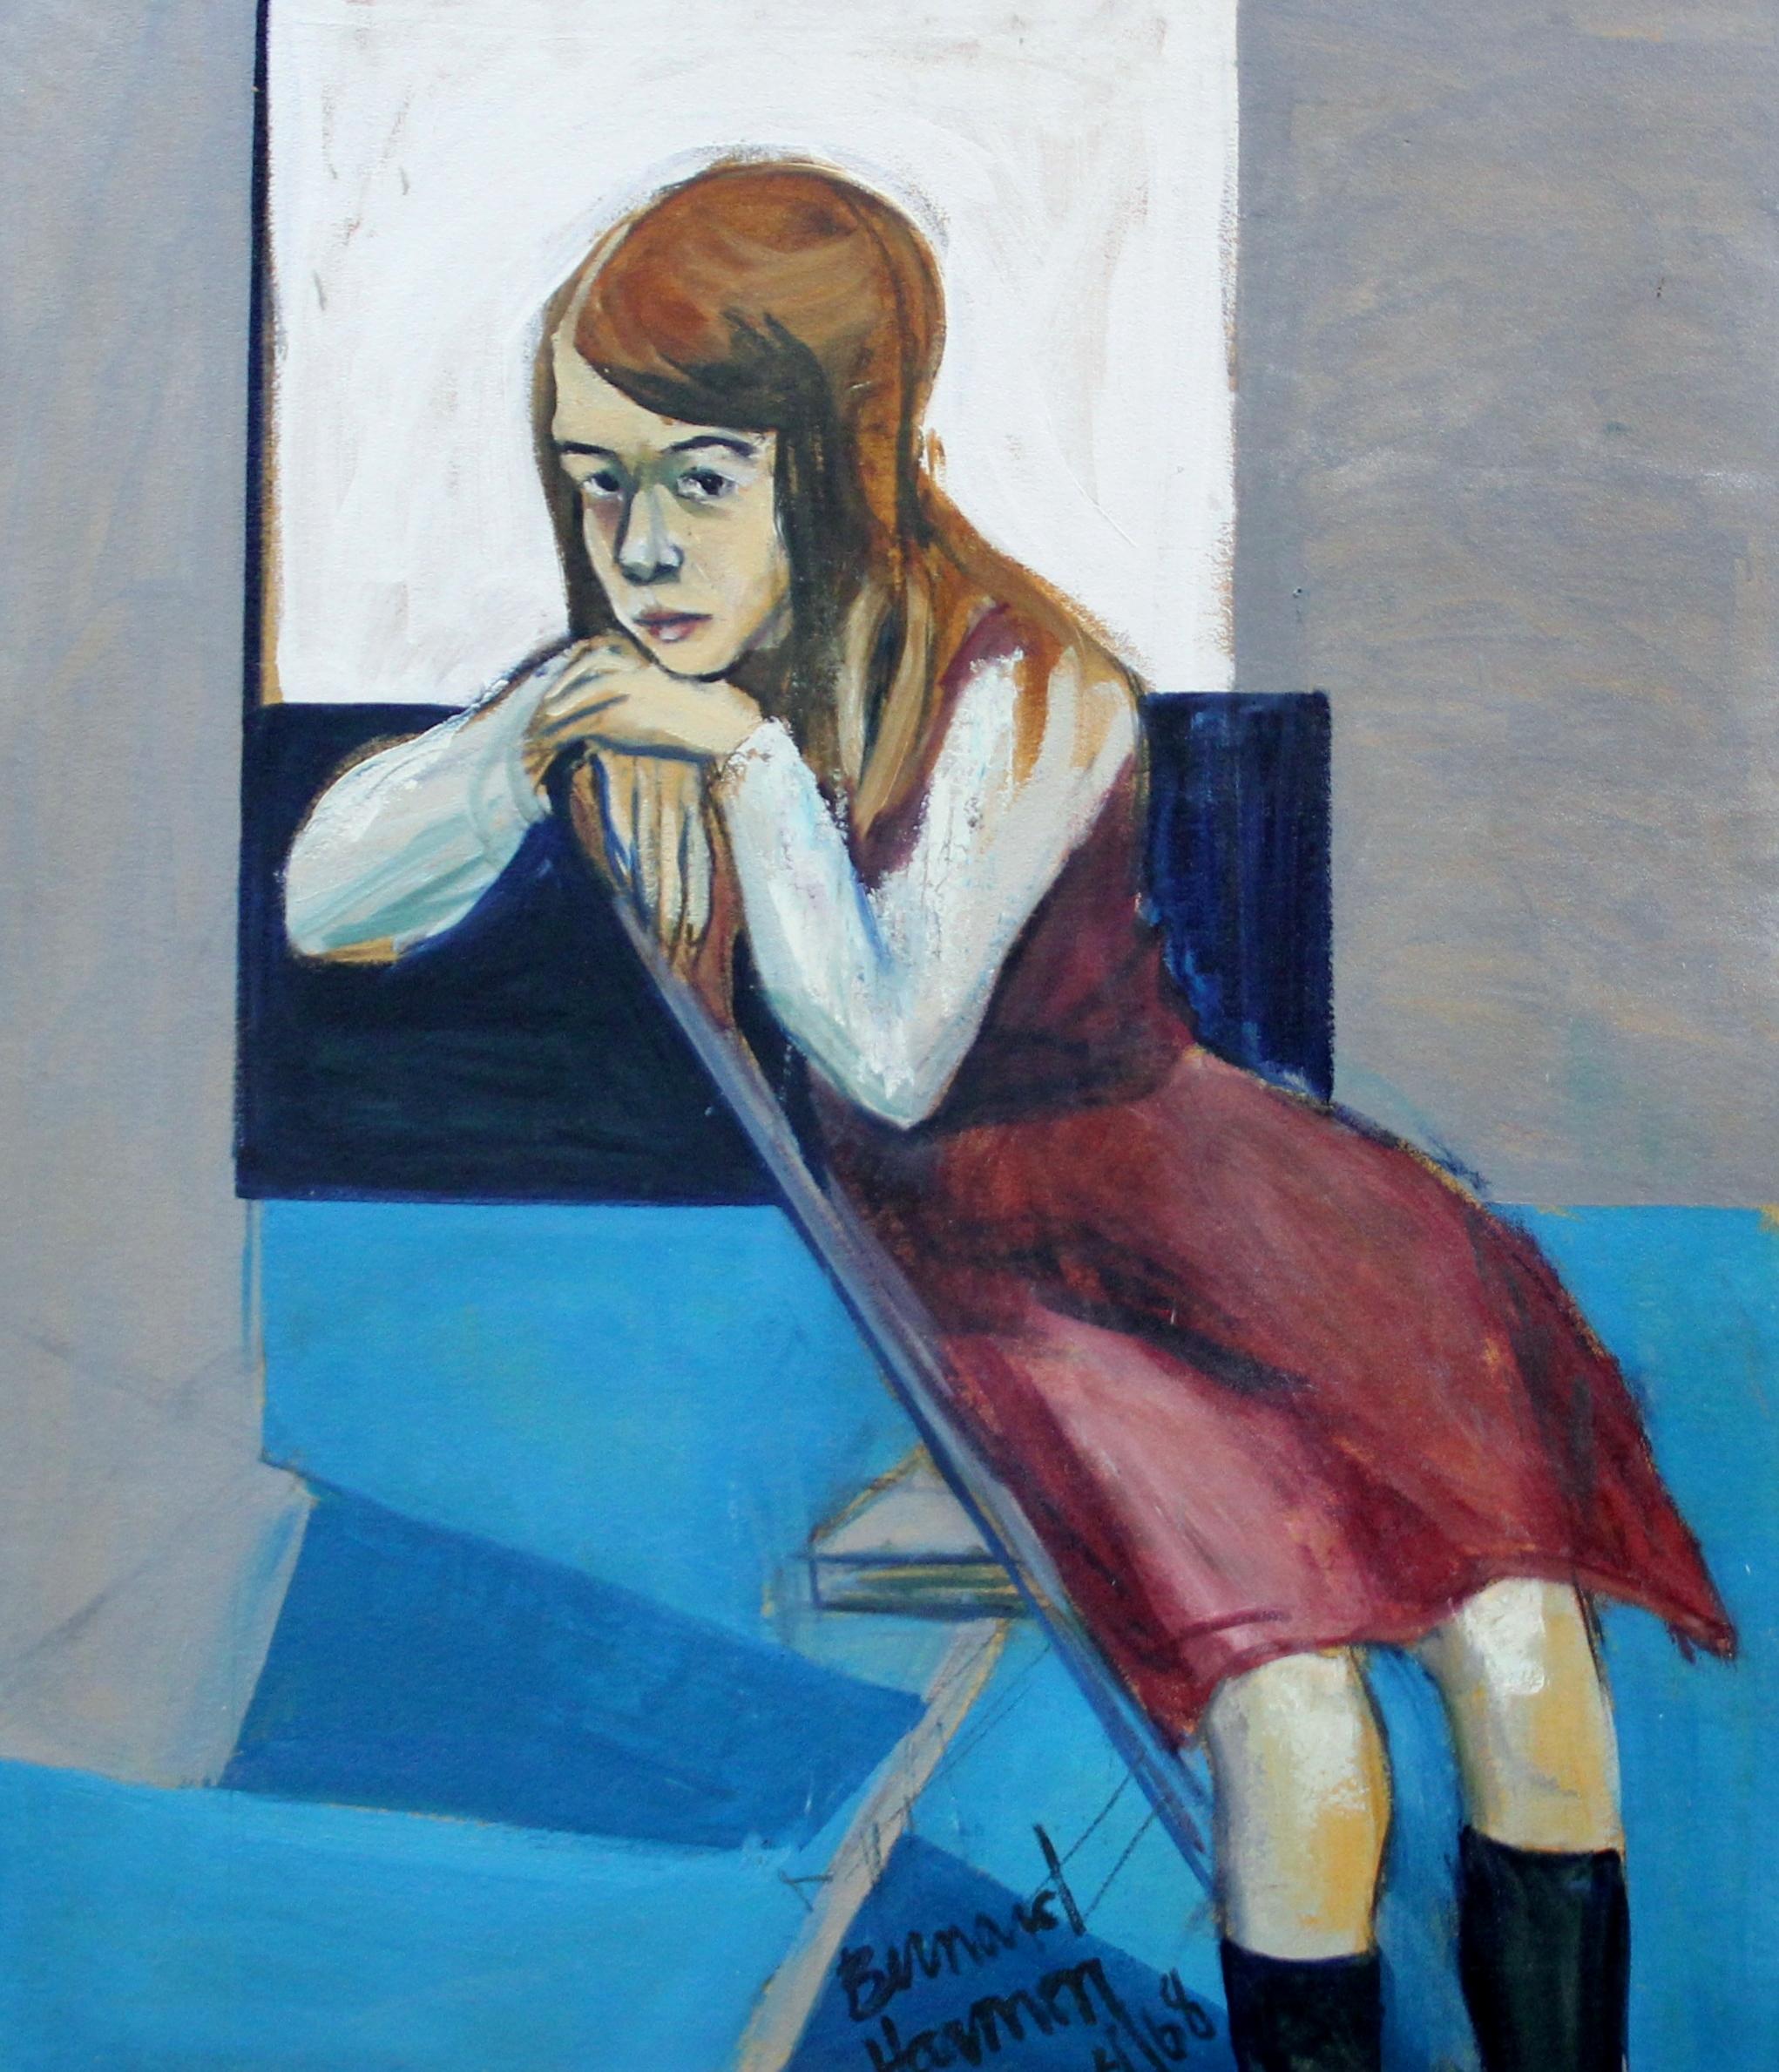 Bernard Harmon Portrait Painting – School Girl, Expressionistisches Porträt des Künstlers aus Philadelphia